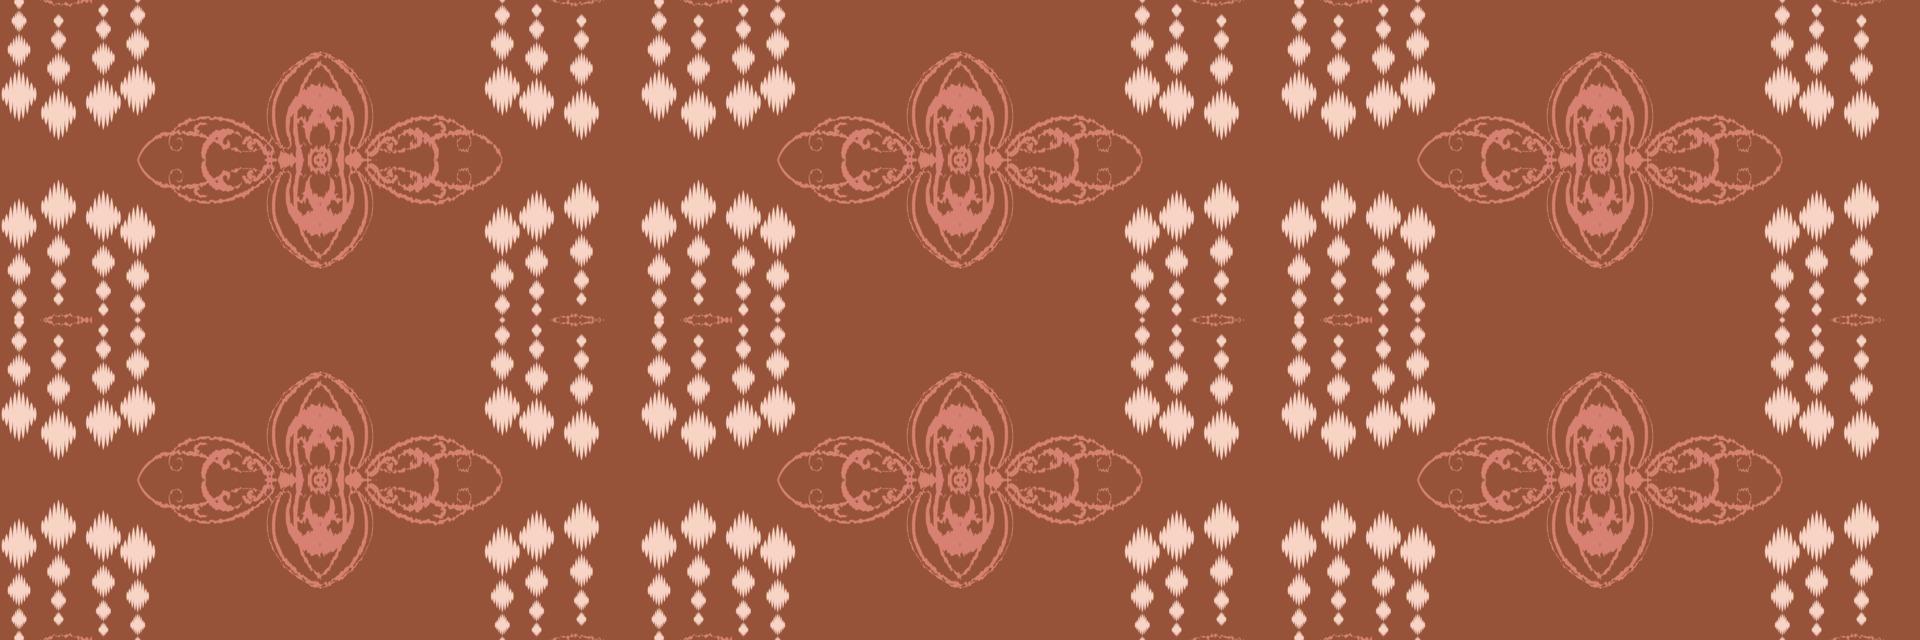 batik têxtil ikkat ou ikat flores padrão sem costura design de vetor digital para impressão saree kurti borneo tecido borda escova símbolos amostras elegantes